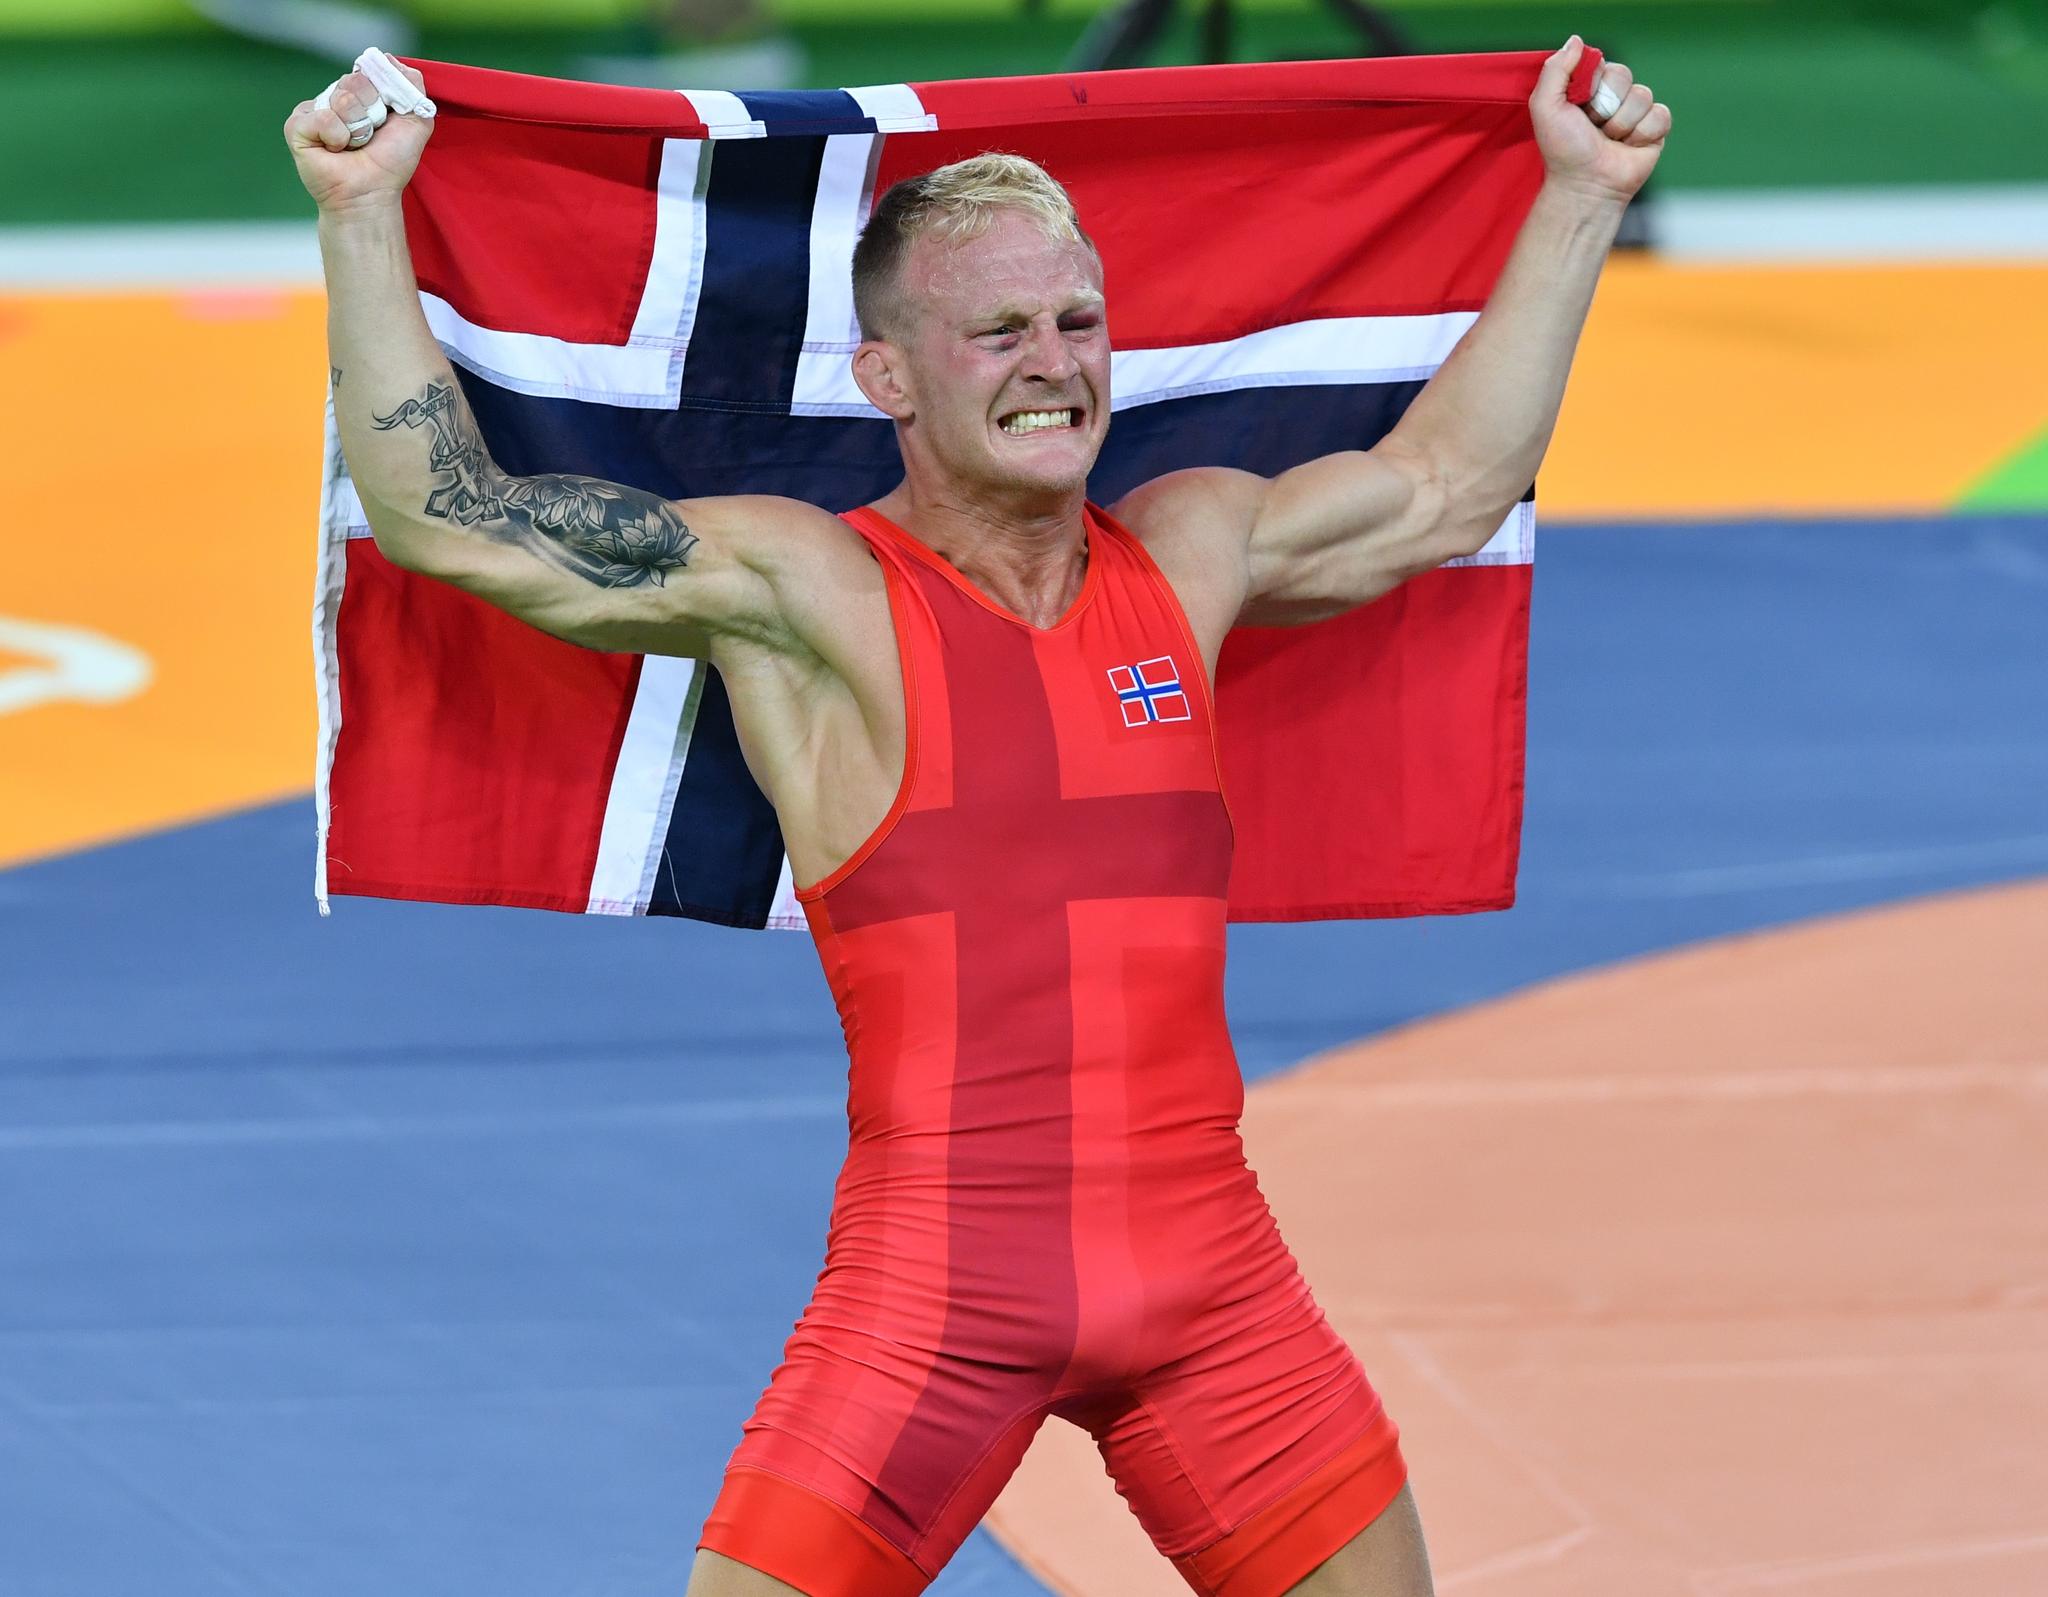 STØRSTE ØYEBLIKK: Stig-André Berge feirer sin bronsemedalje i Rio de Janeiro-OL for fem år siden.